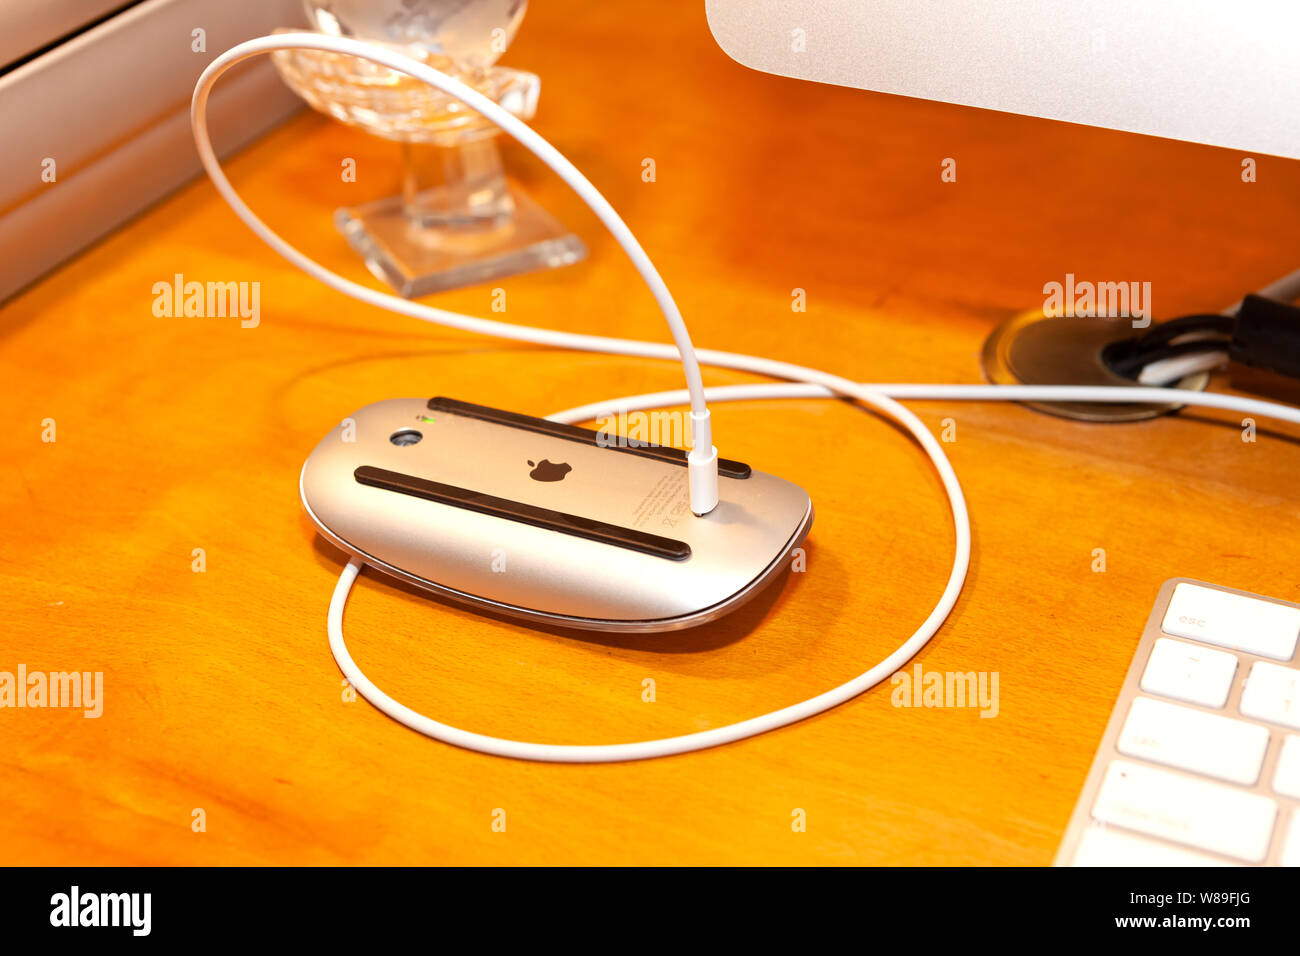 31 photos et images de Apple Magic Mouse 2 - Getty Images